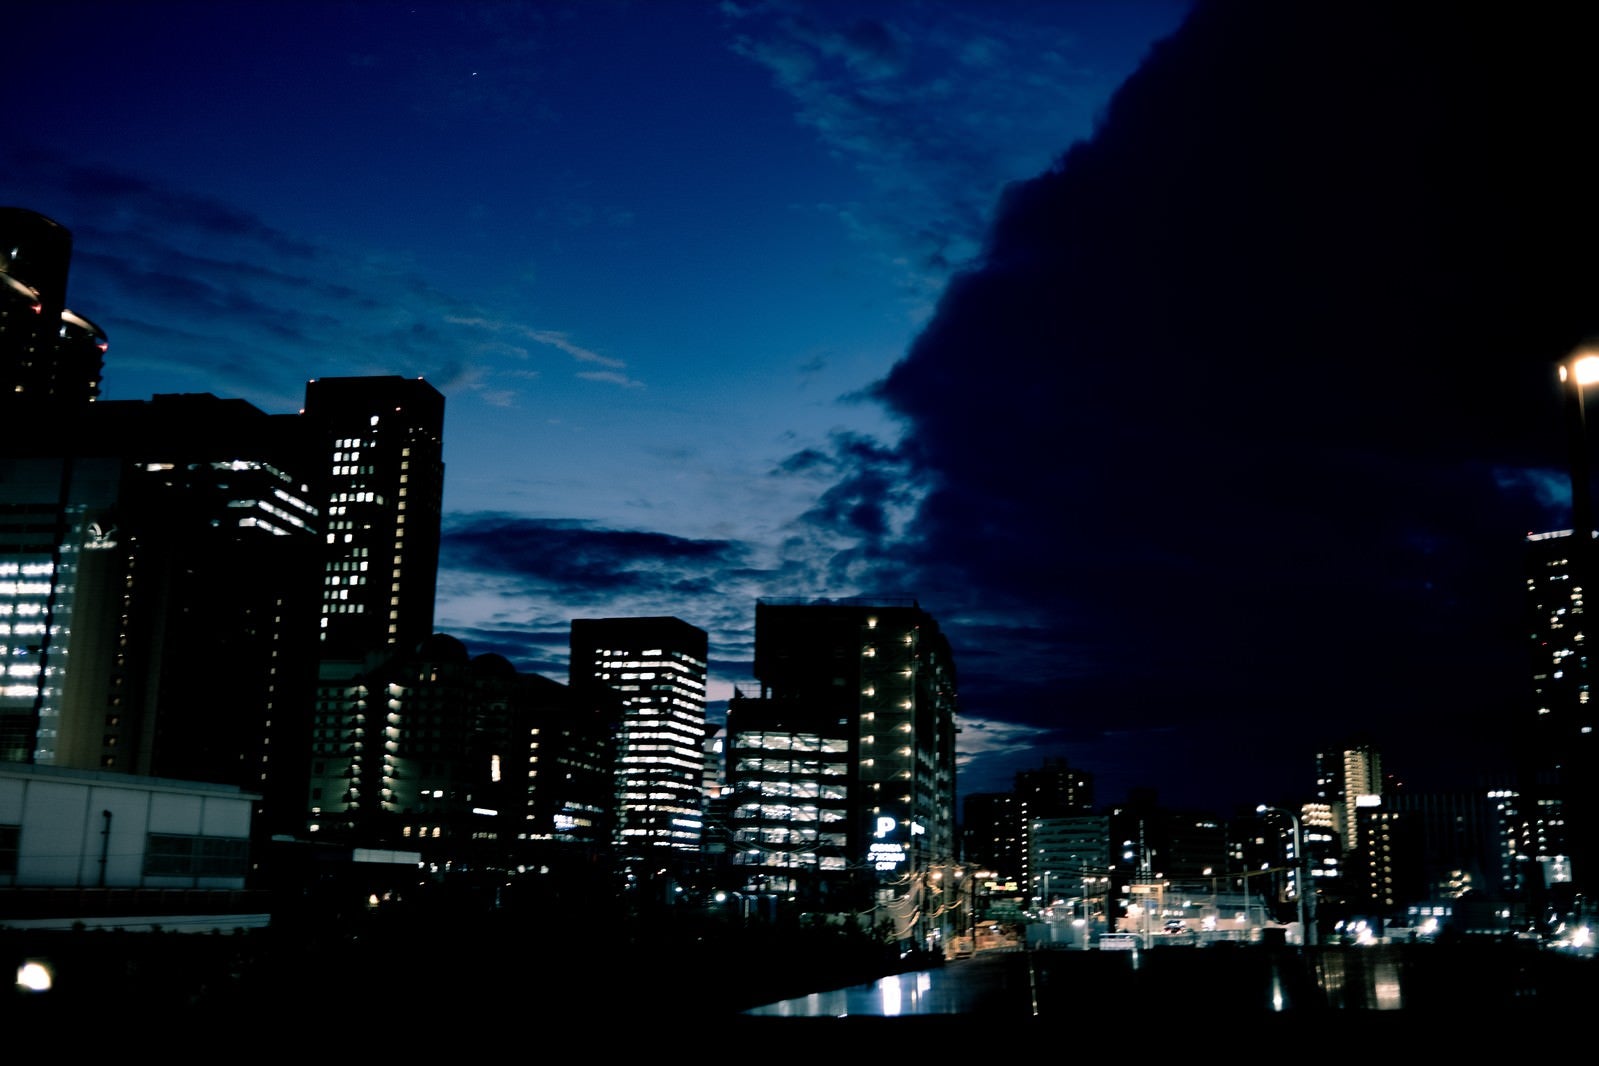 「夜の街並みと雲空」の写真